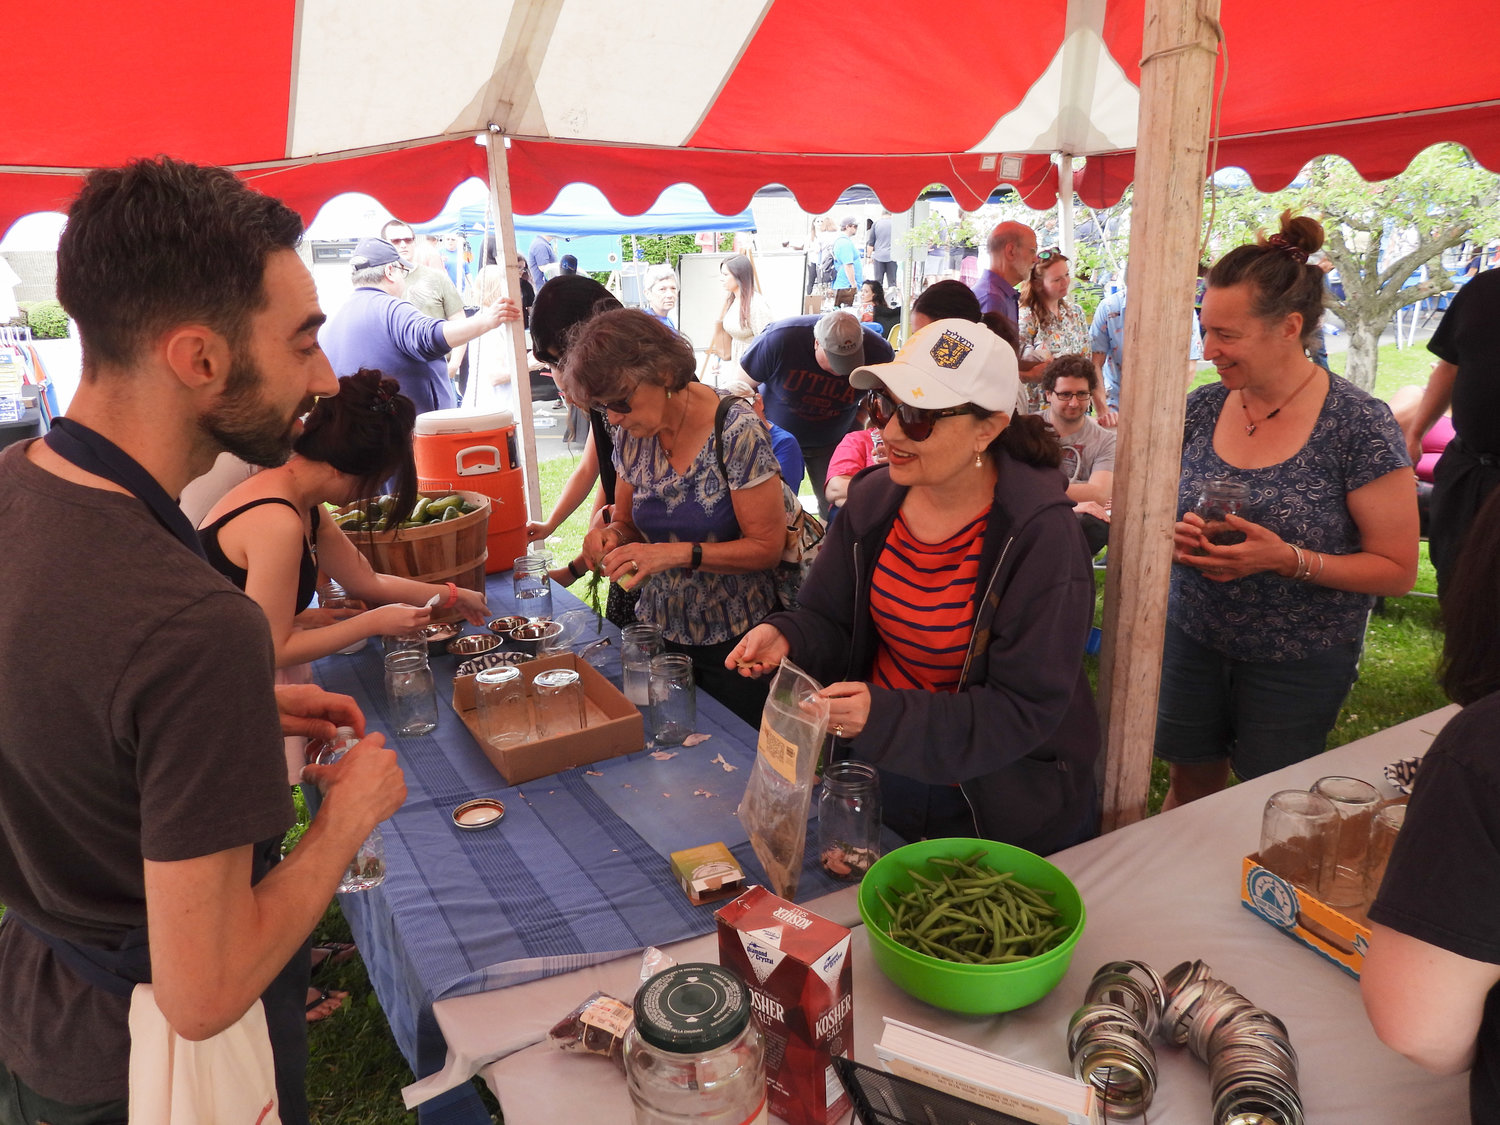 Inauguracyjny festiwal kultury żydowskiej "Jewtica" rozpoczął się w niedzielę 12 czerwca setkami osób w Centrum Społeczności Żydowskiej w Utica.  Ludzie zjeżdżali się z całego świata, aby dzielić się kulturą, skosztować pysznych potraw i nauczyć się czegoś nowego.  Jeffrey Yoskowitz, po lewej, rozmawia z uczestnikami o żydowskiej kuchni i przepisach.  Yoskowitz dał demonstrację, a uczestnicy obserwowali, jak demonstrował przepisy na ogórki kiszone.